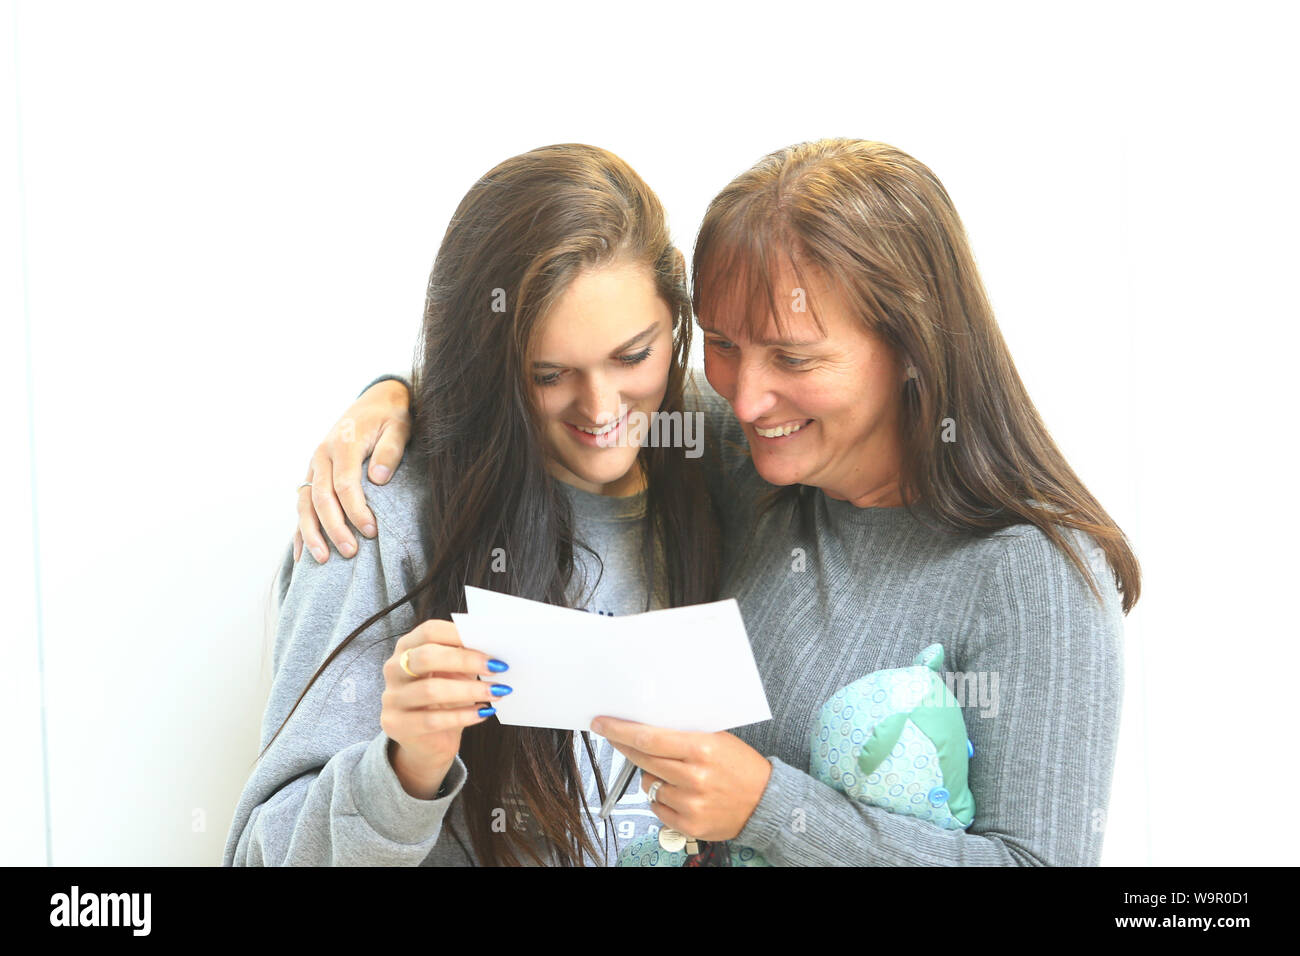 Eine Mutter mit ihrer Tochter, die ihr eine Ebene Prüfungsergebnisse eröffnet hat, Großbritannien 2019 Stockfoto